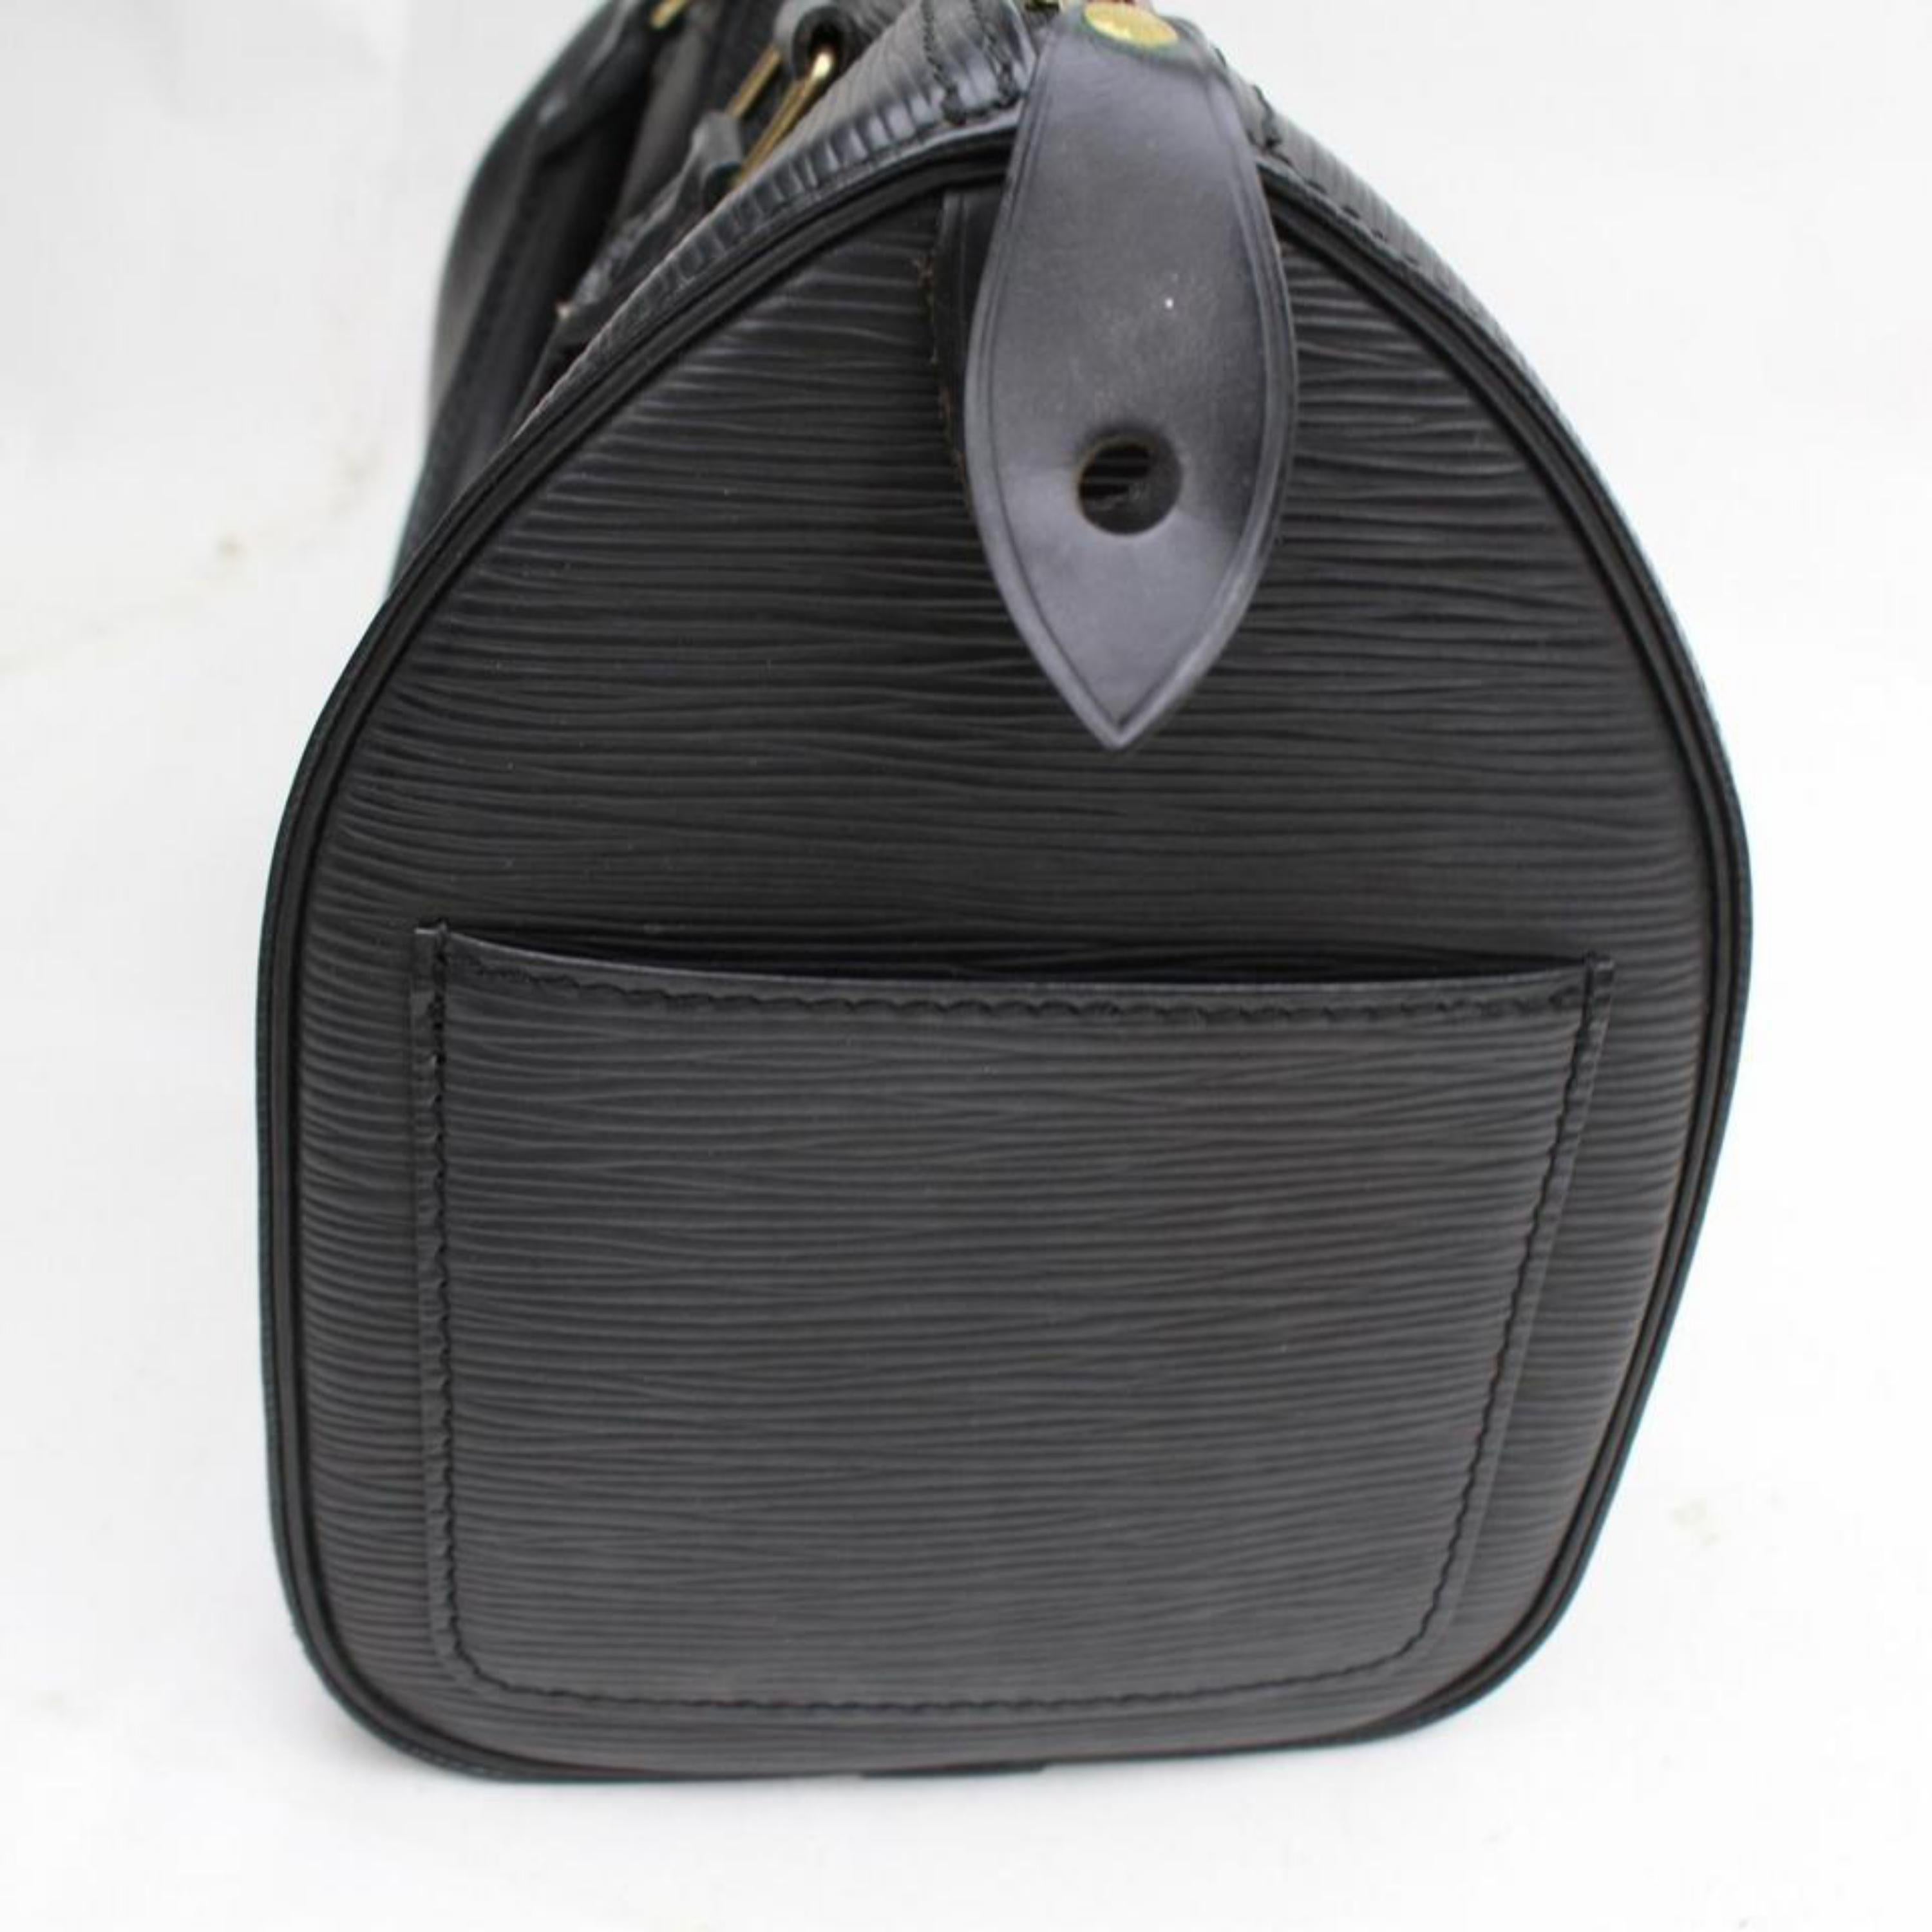 Louis Vuitton Speedy Noir 25 869188 Black Leather Satchel For Sale 3